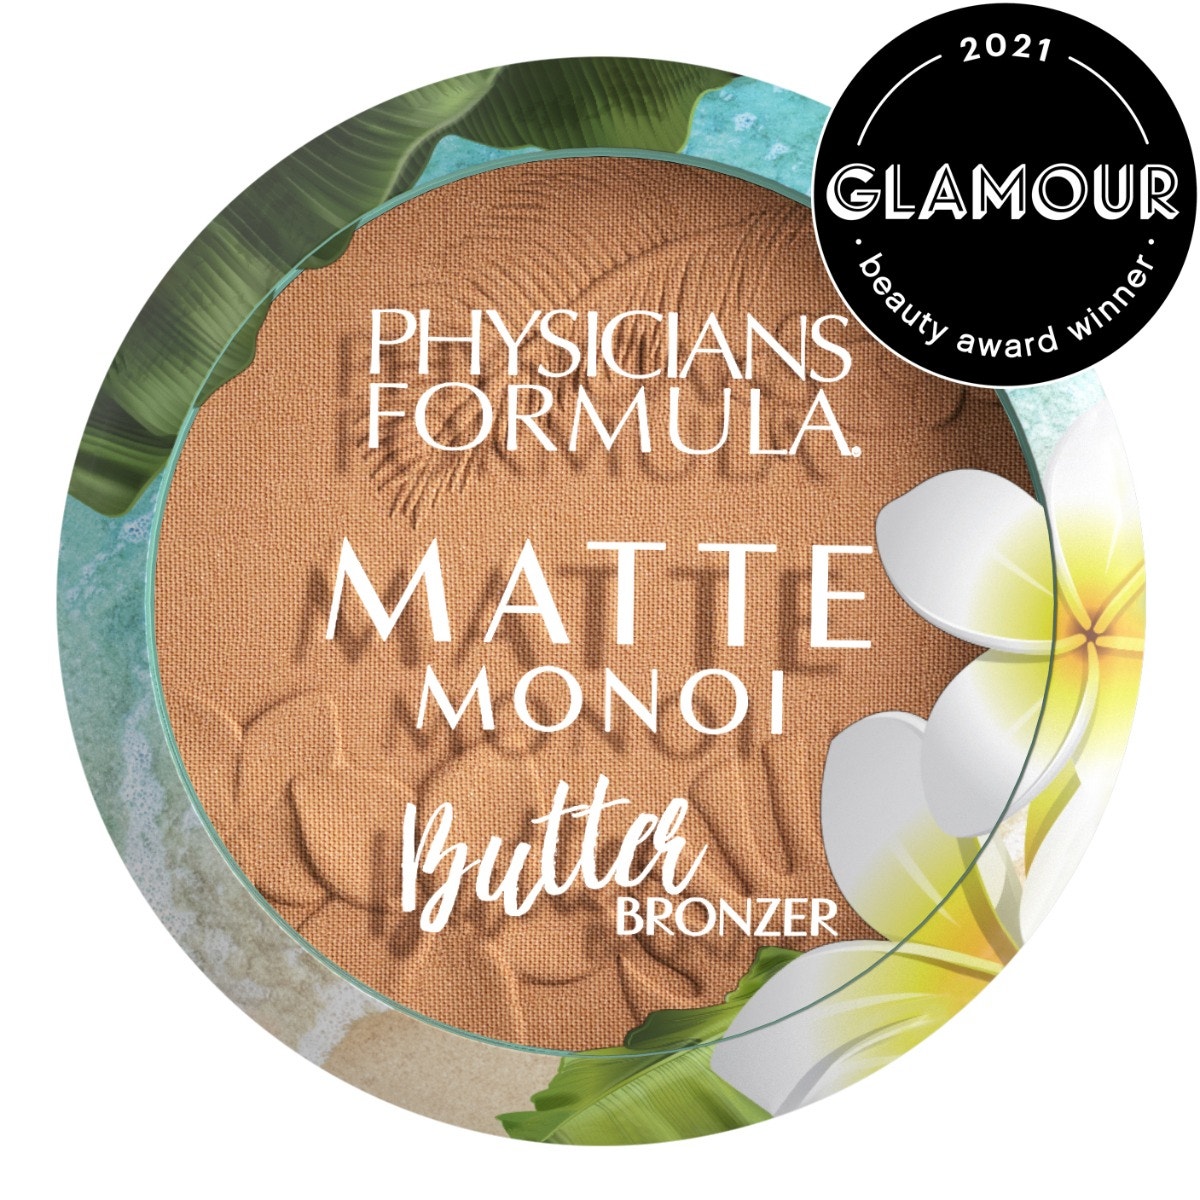 Matte Monoi Butter Bronzer | Physicians Formula